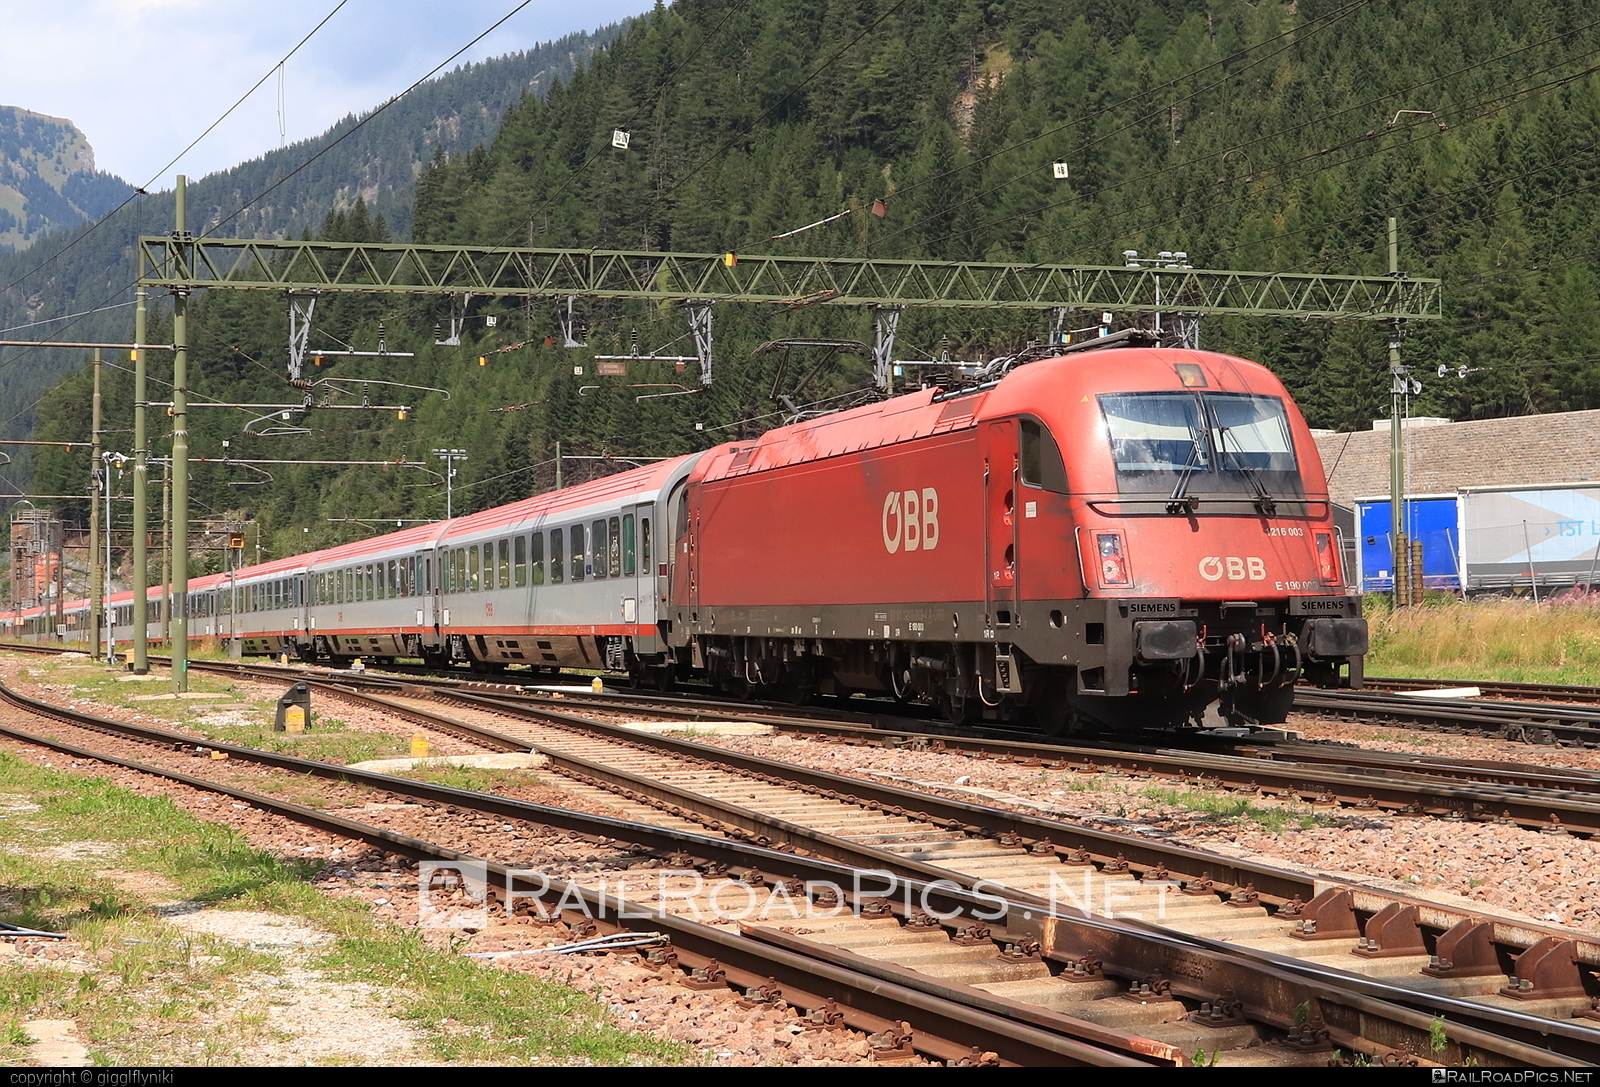 Siemens ES 64 U4 - 1216 003 operated by Österreichische Bundesbahnen #es64 #es64u4 #eurosprinter #obb #osterreichischebundesbahnen #siemens #siemensEs64 #siemensEs64u4 #siemenstaurus #taurus #tauruslocomotive